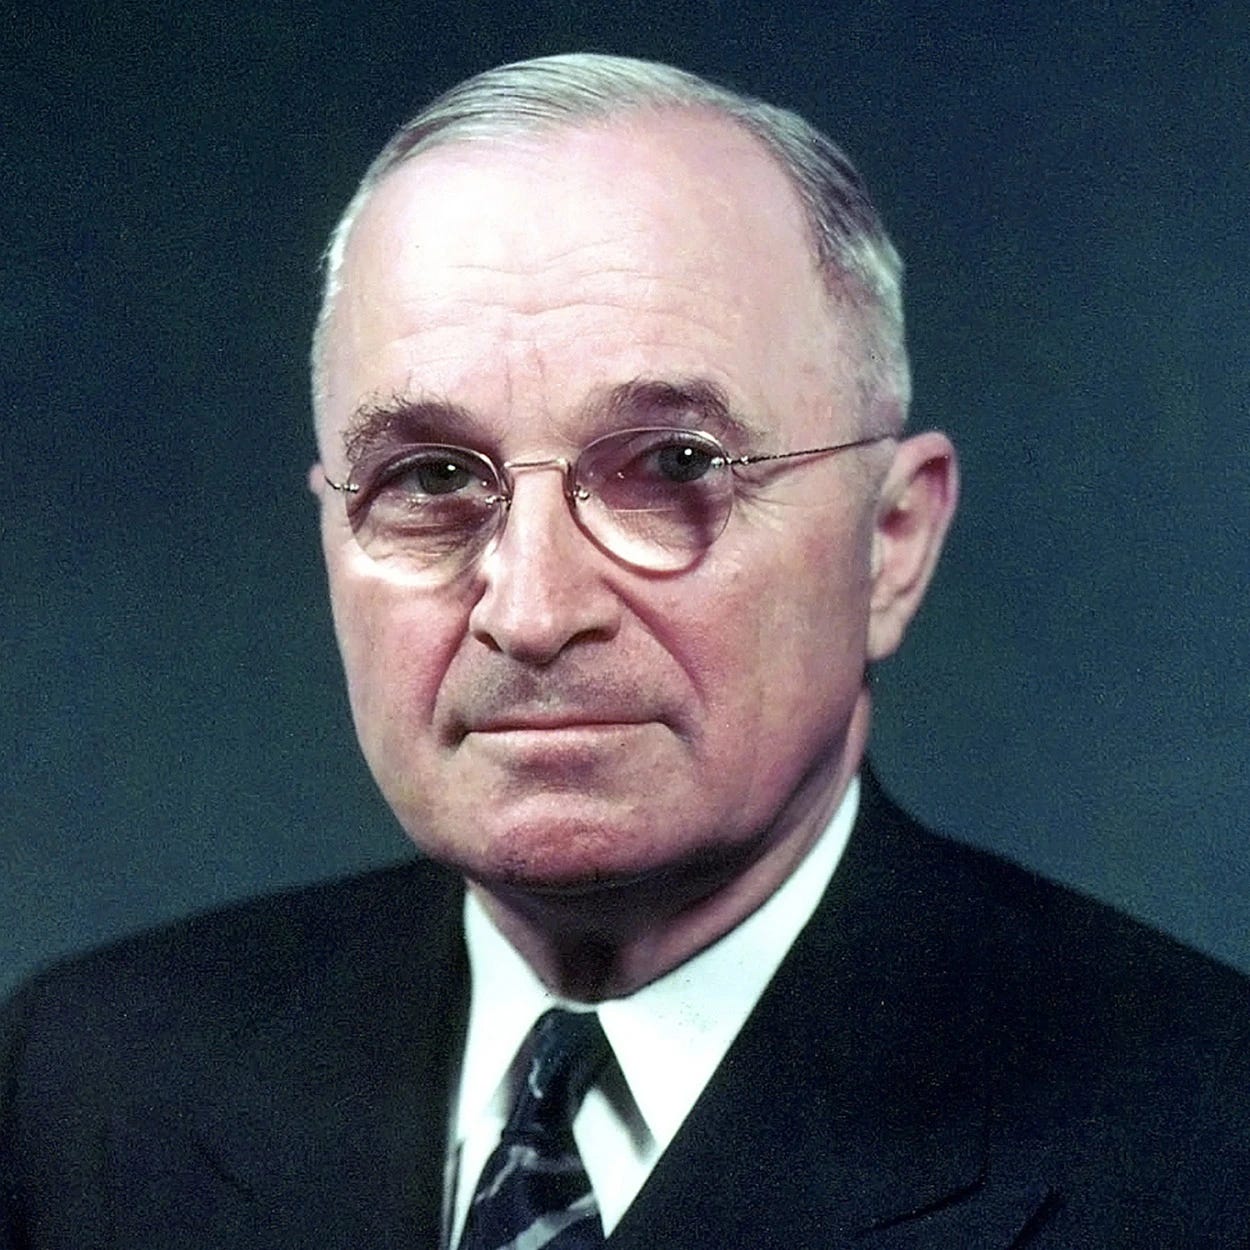 Harry Truman. From whitehouse.gov